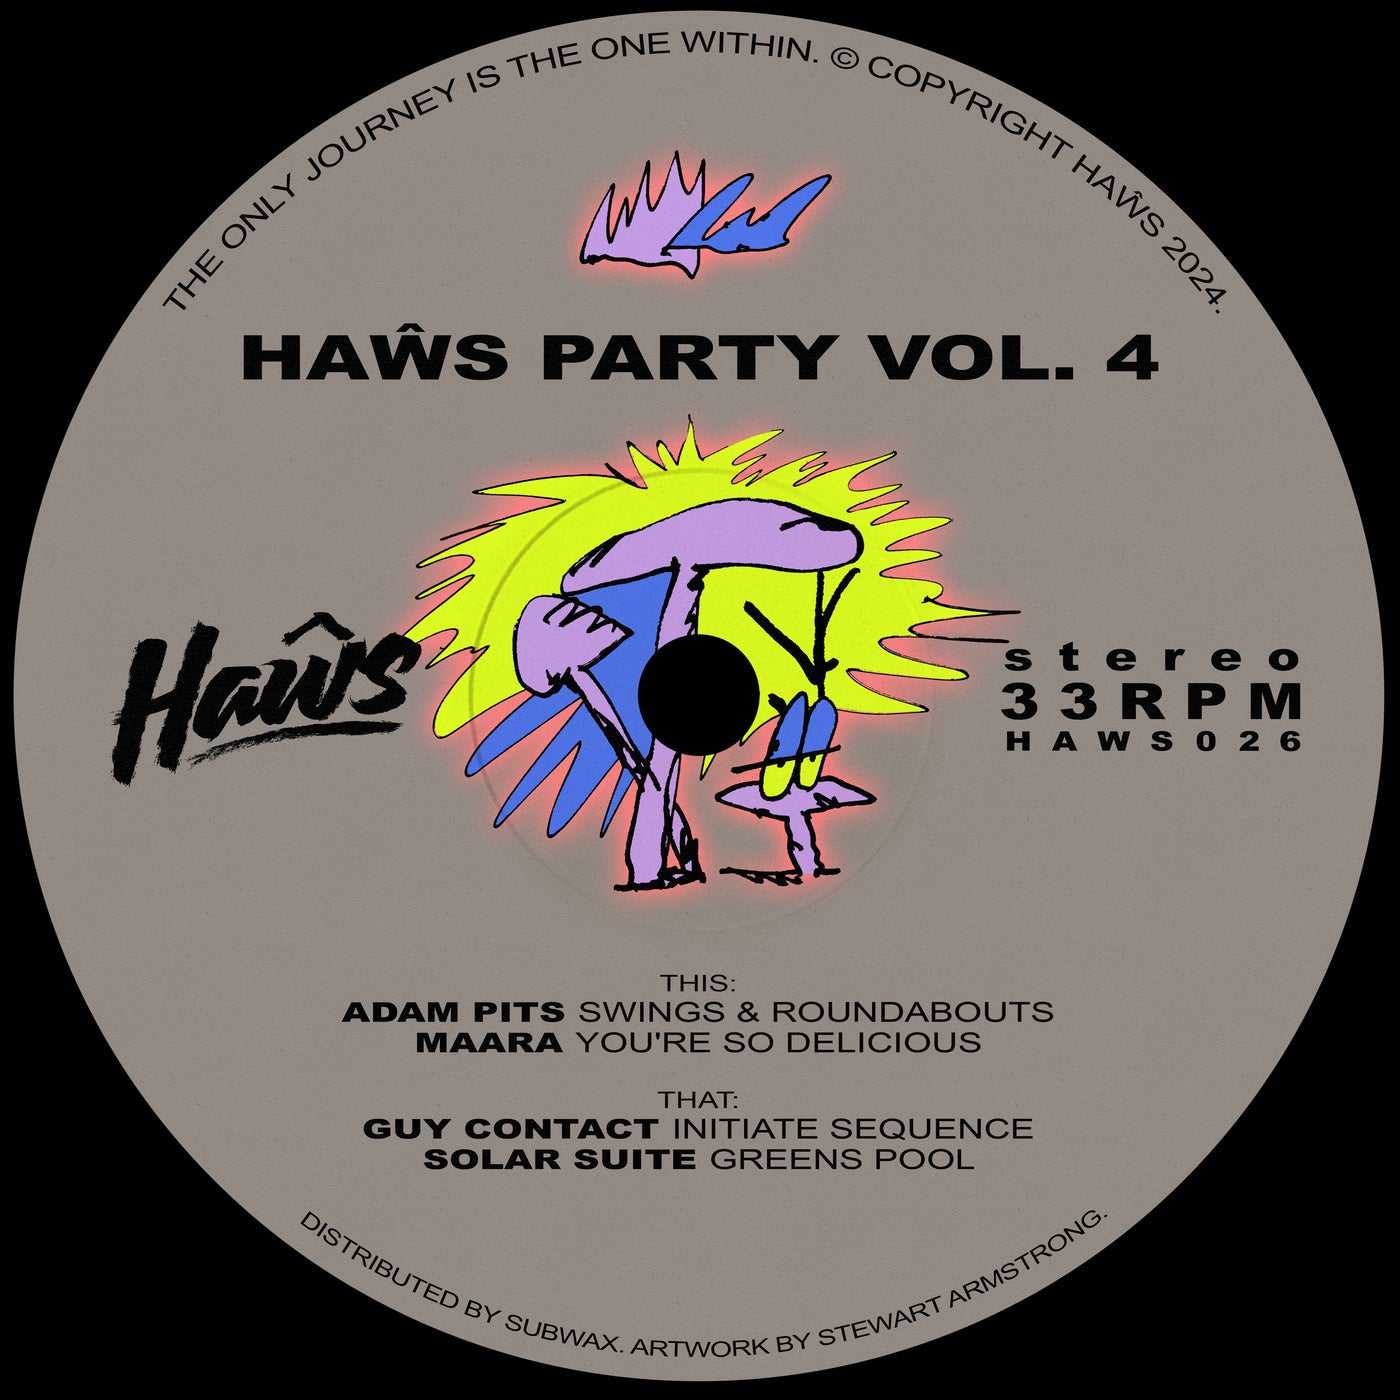 Haŵs Party Vol. 4